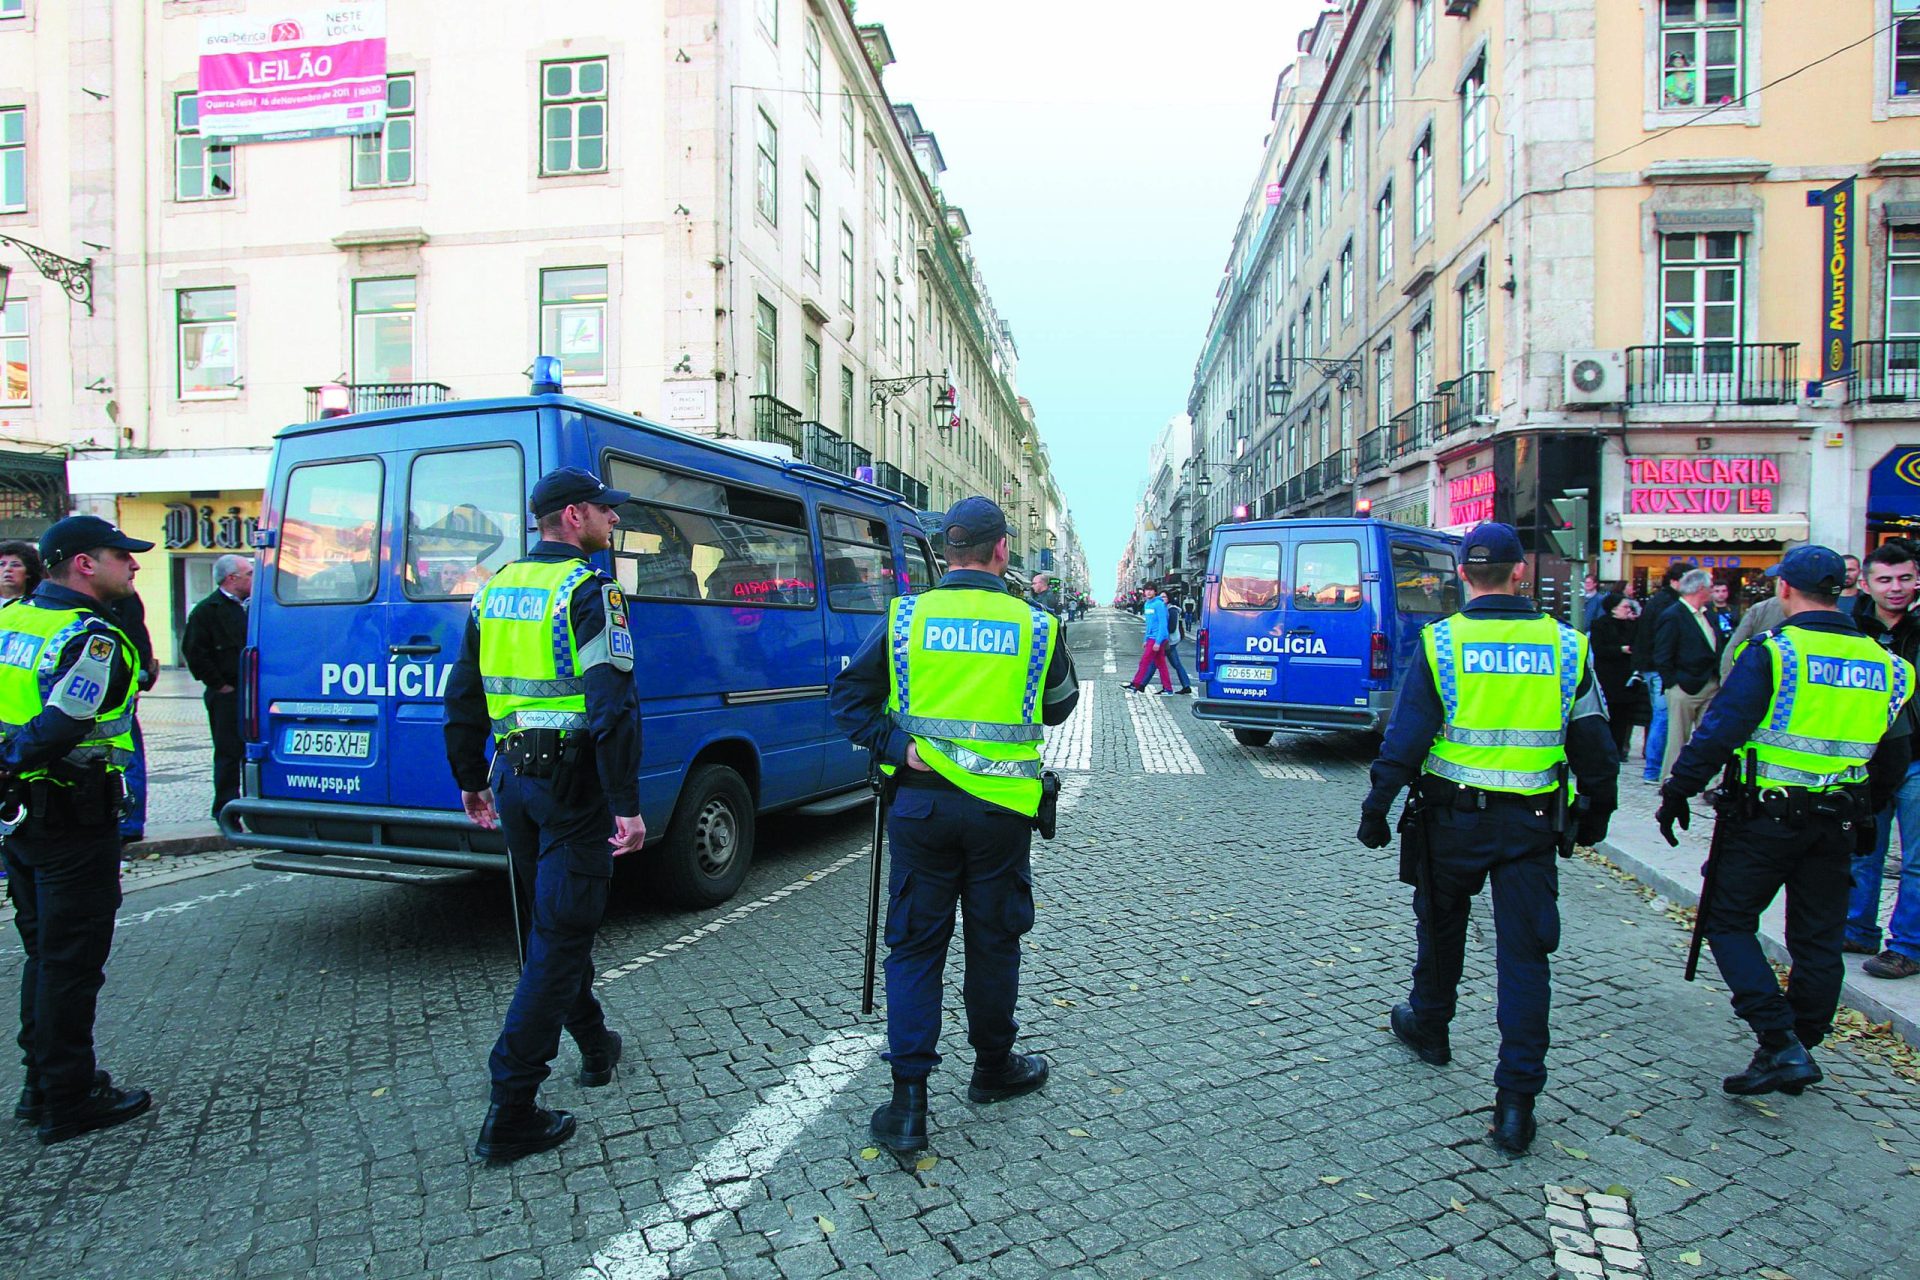 Trânsito cortado em algumas ruas de Lisboa devido a manifestação de polícias